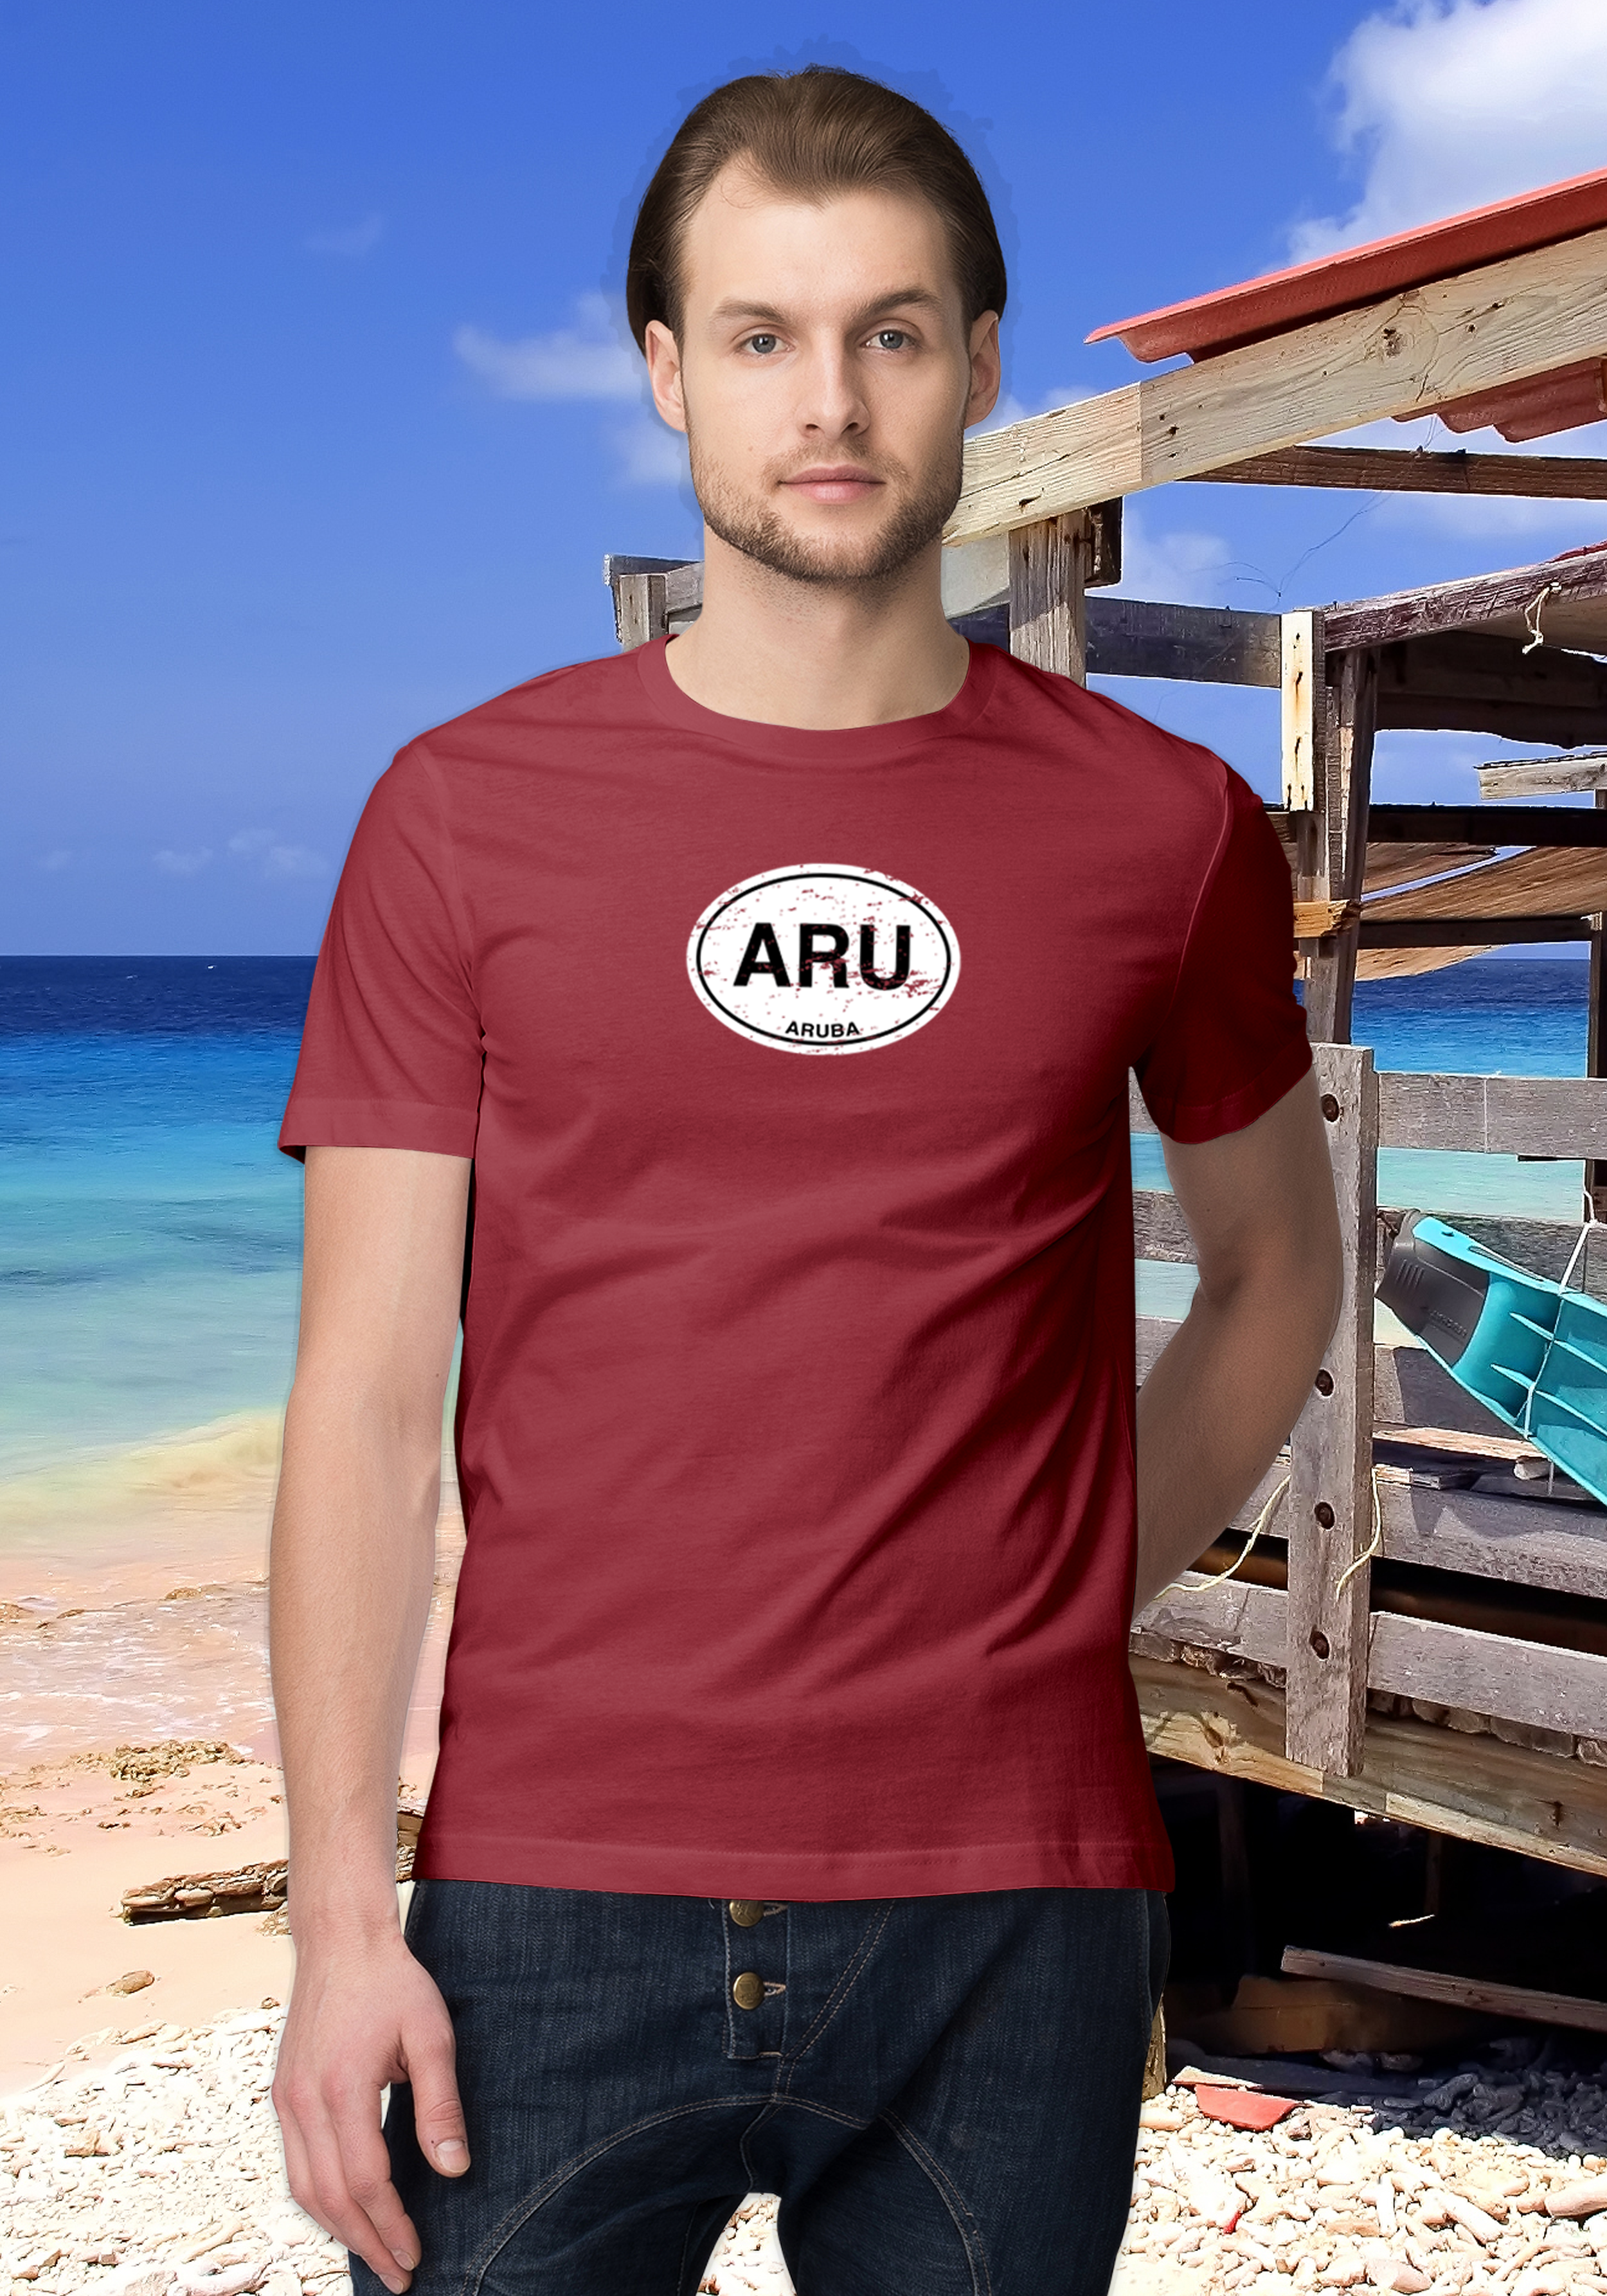 Aruba Men's Classic T-Shirt Souvenirs - My Destination Location